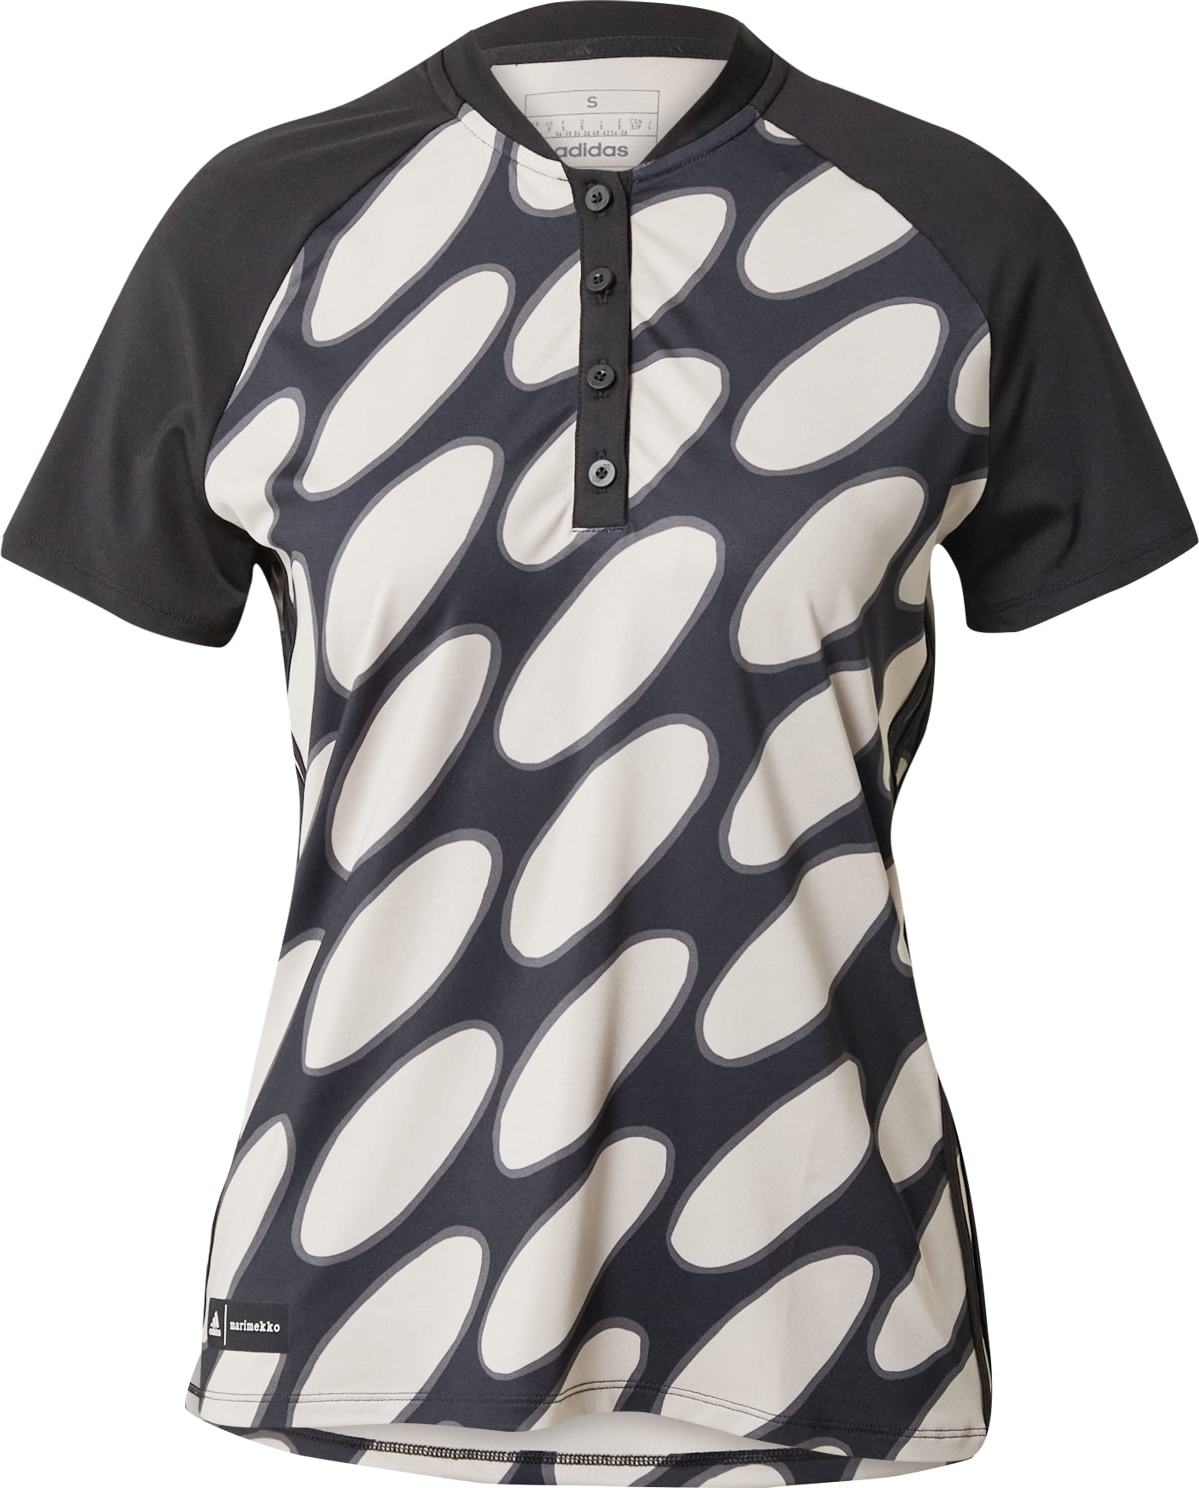 Funkční tričko adidas Golf světle šedá / tmavě šedá / černá